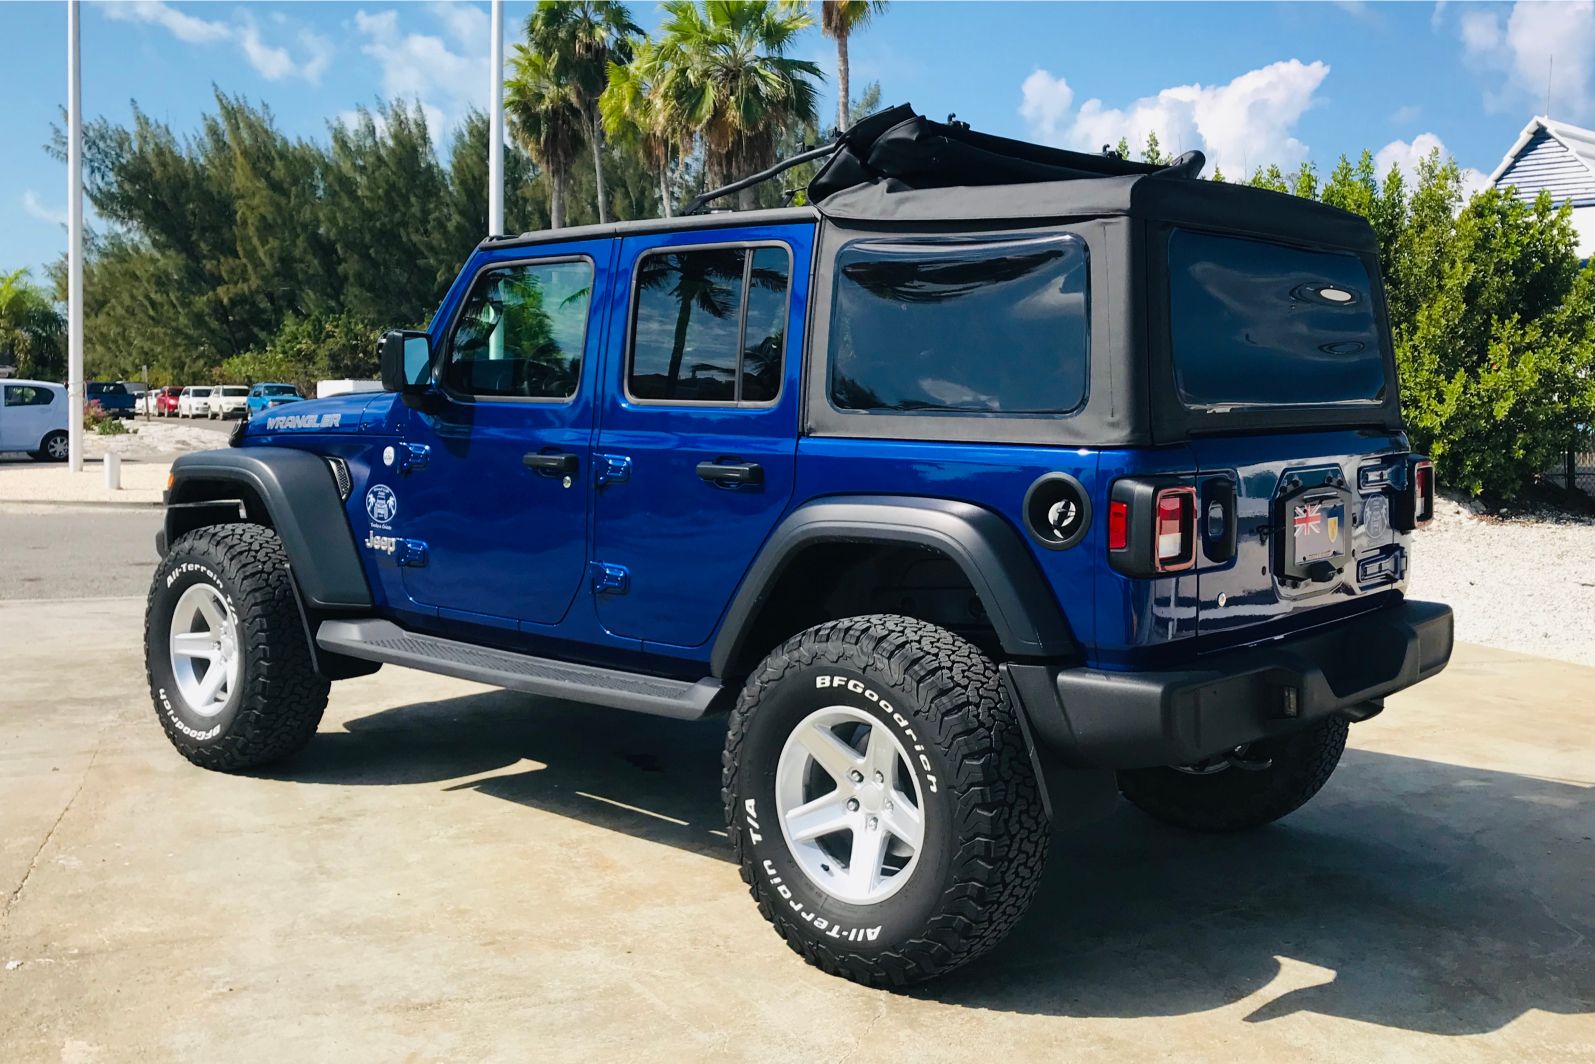 Ocean Blue 4-Door Jeep Wrangler Unlimited